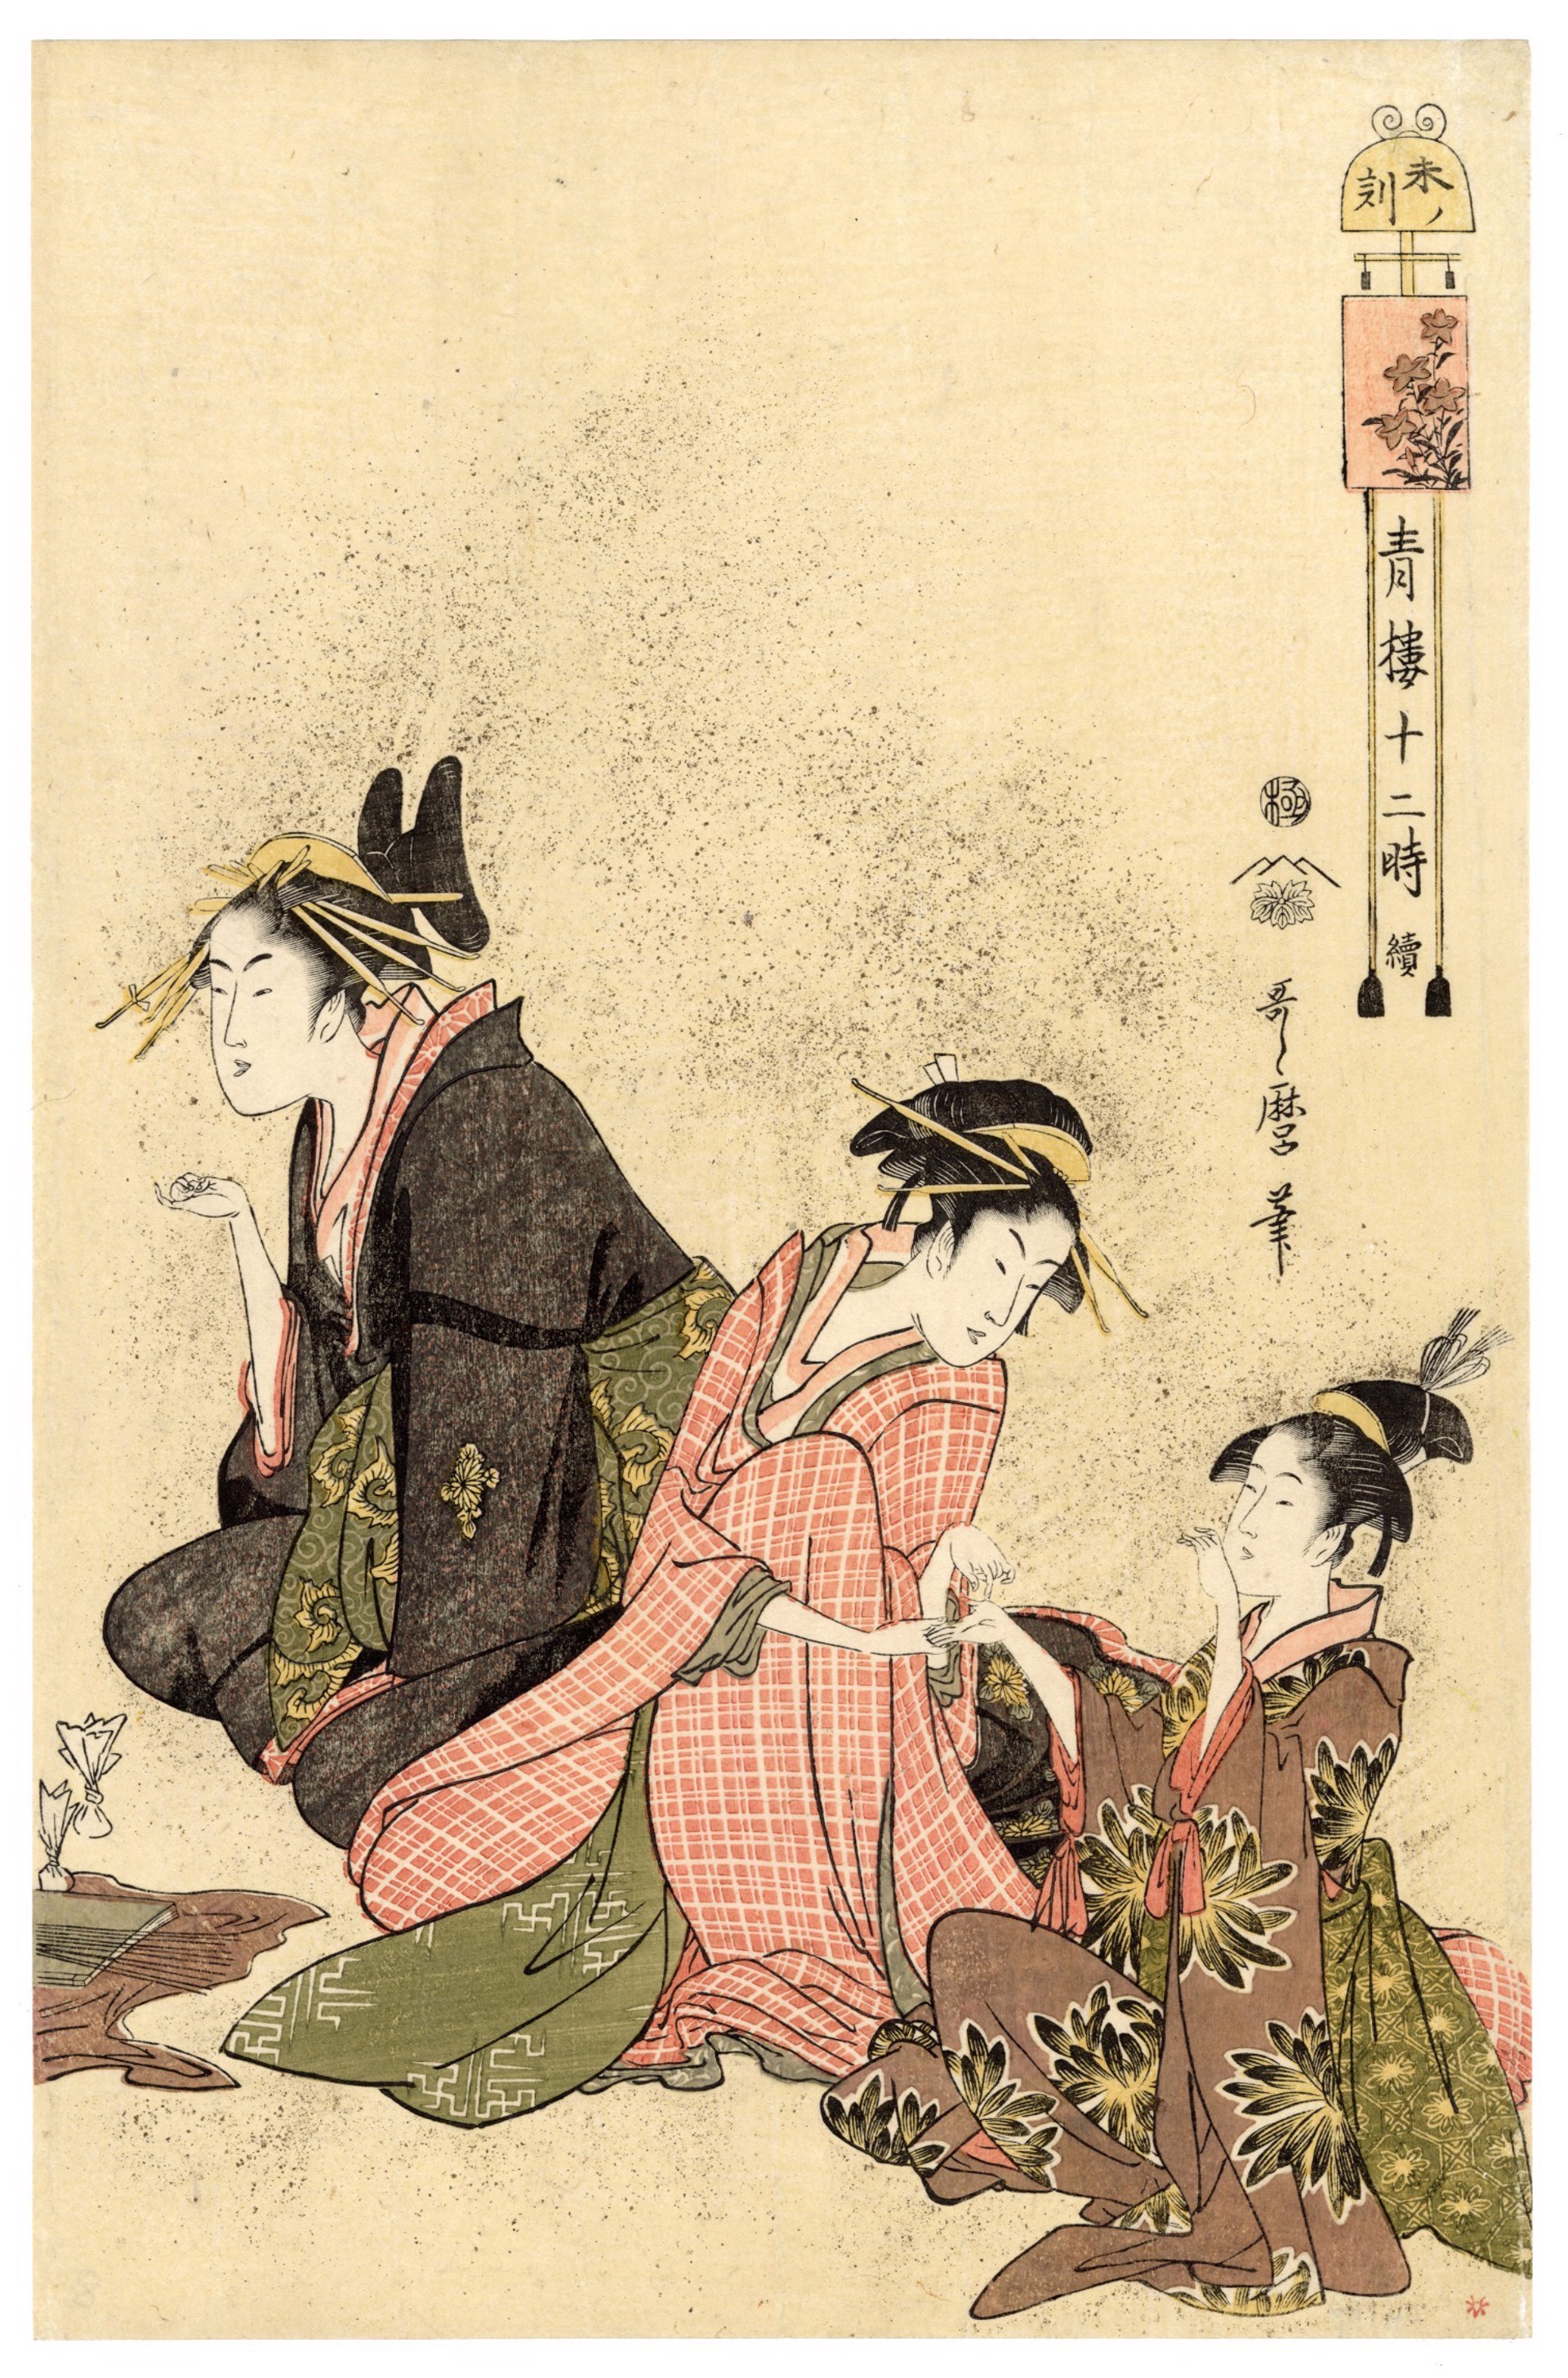 #8 Hour of the Sheep (Hitsuji no Koku) 2 PM (1 - 3 PM) by Utamaro